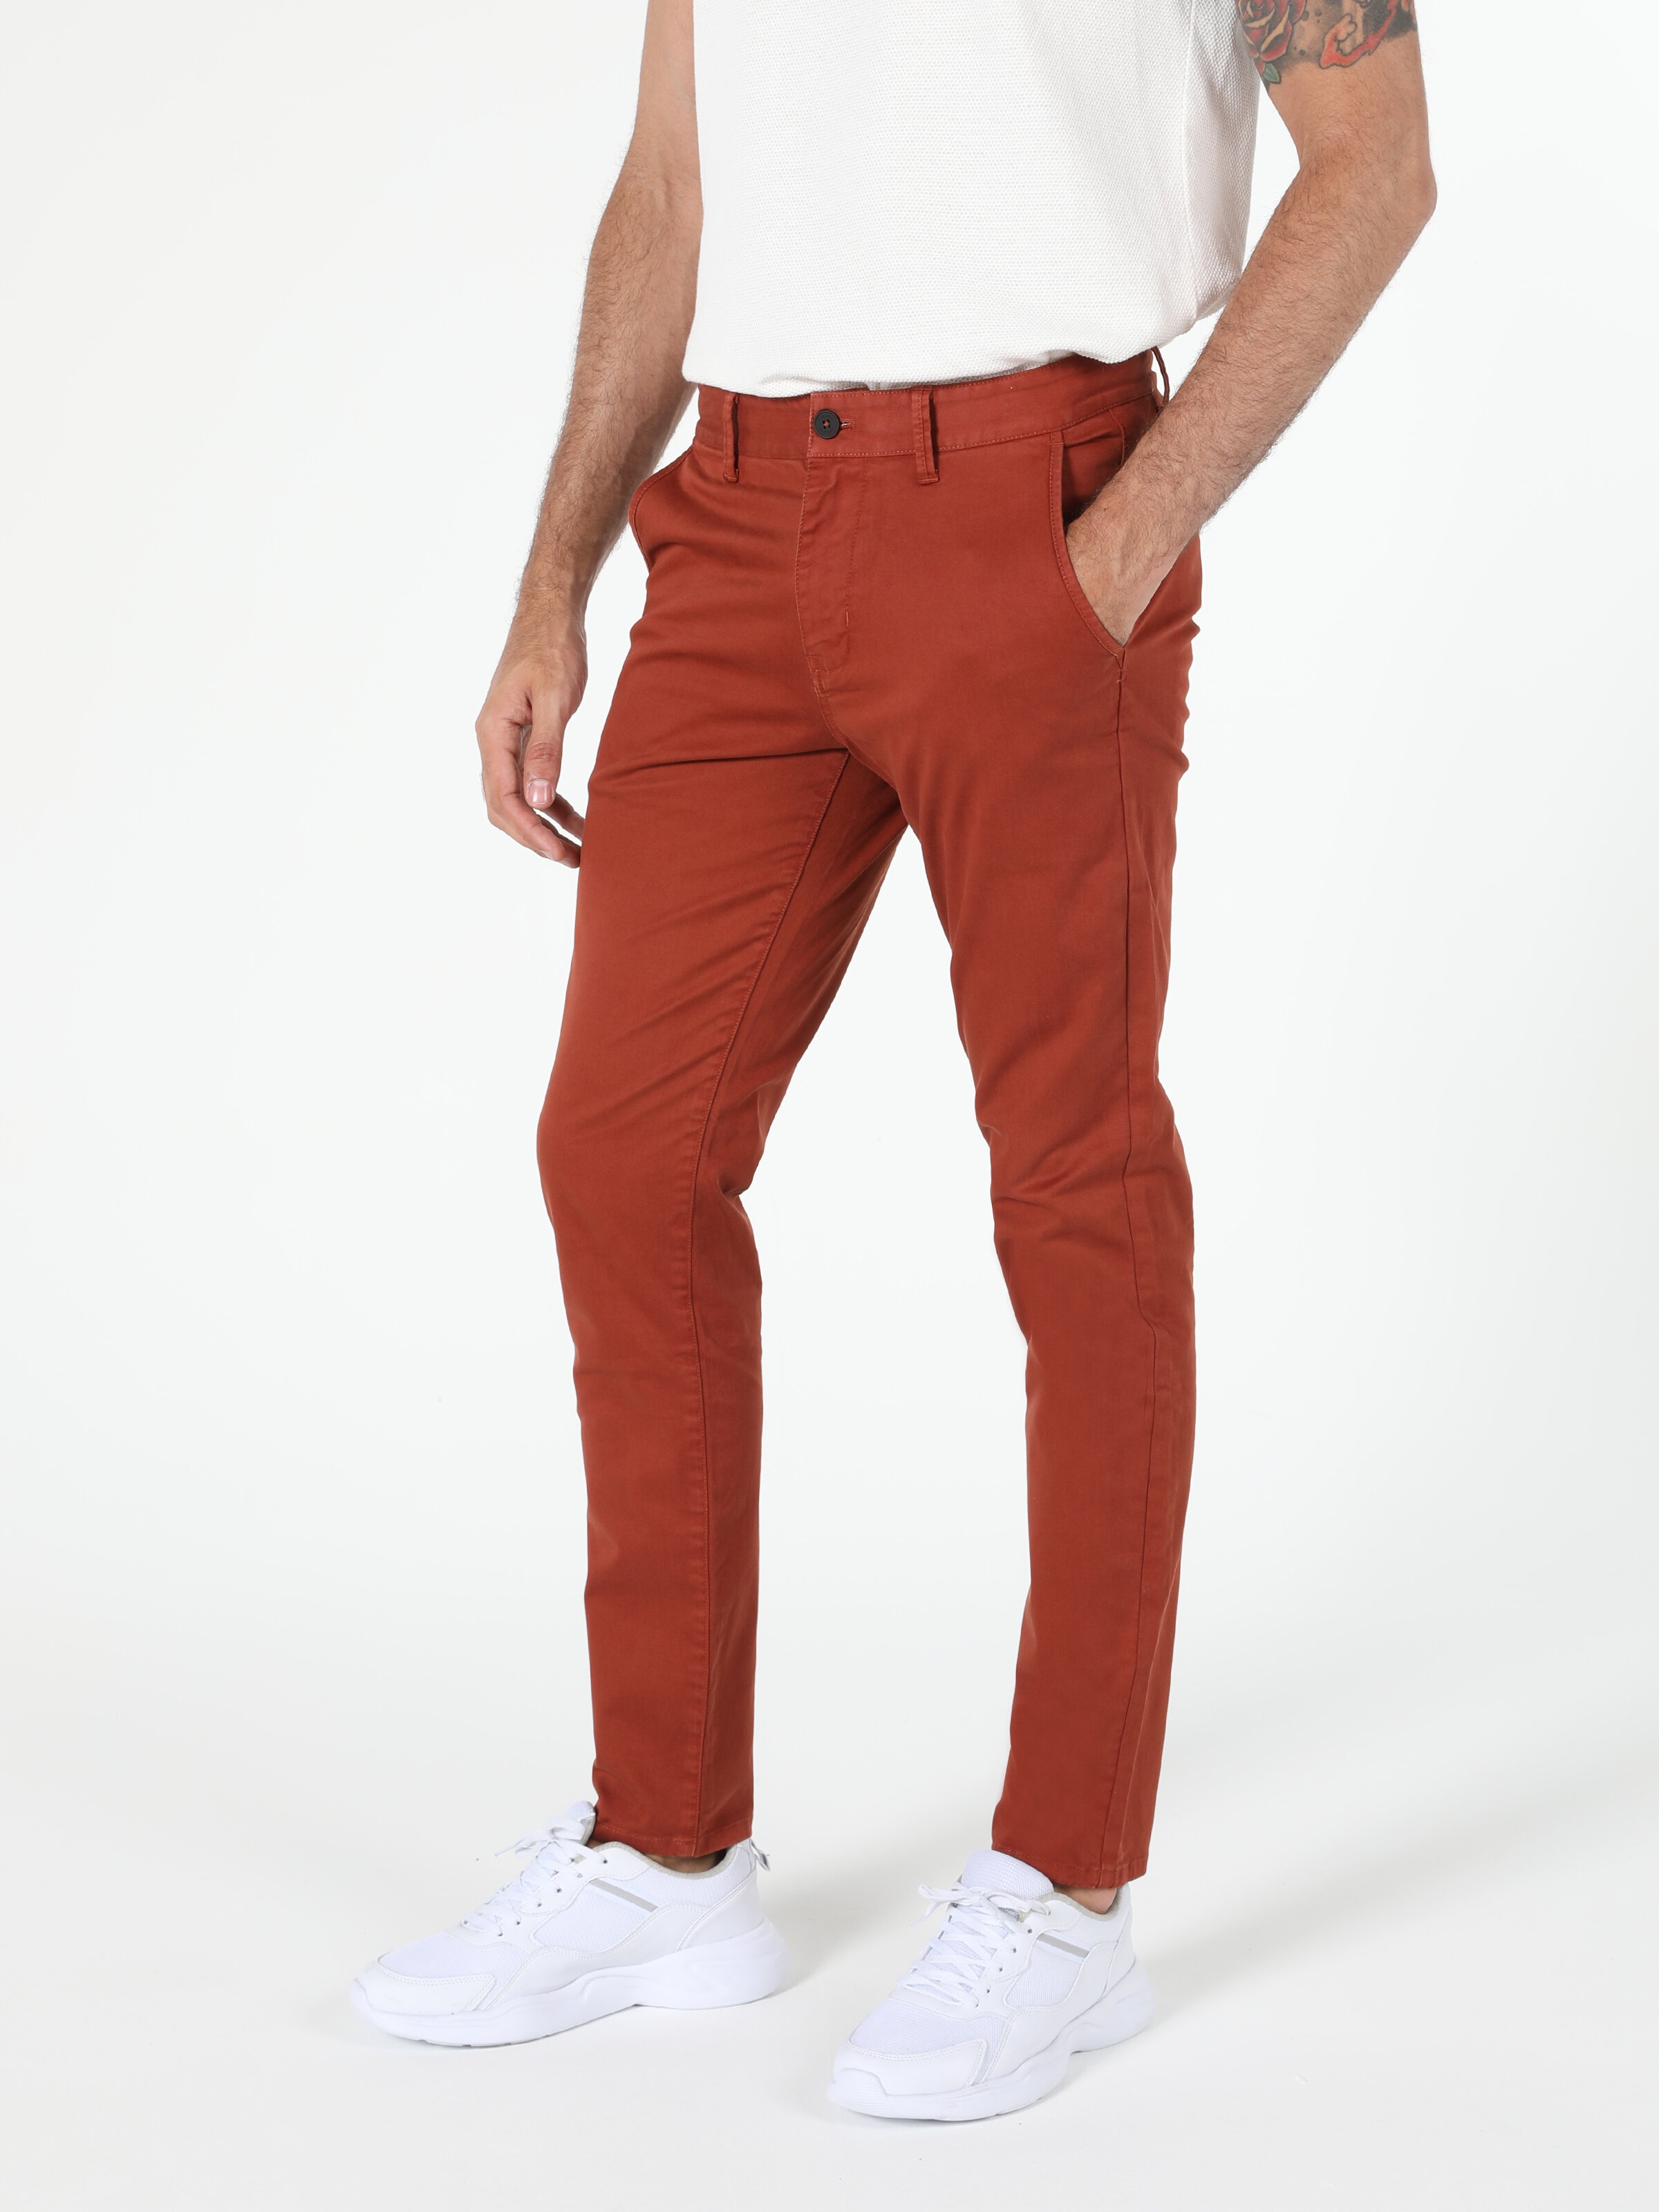 Afișați detalii pentru Pantaloni De Barbati Roşu Slim Fit 